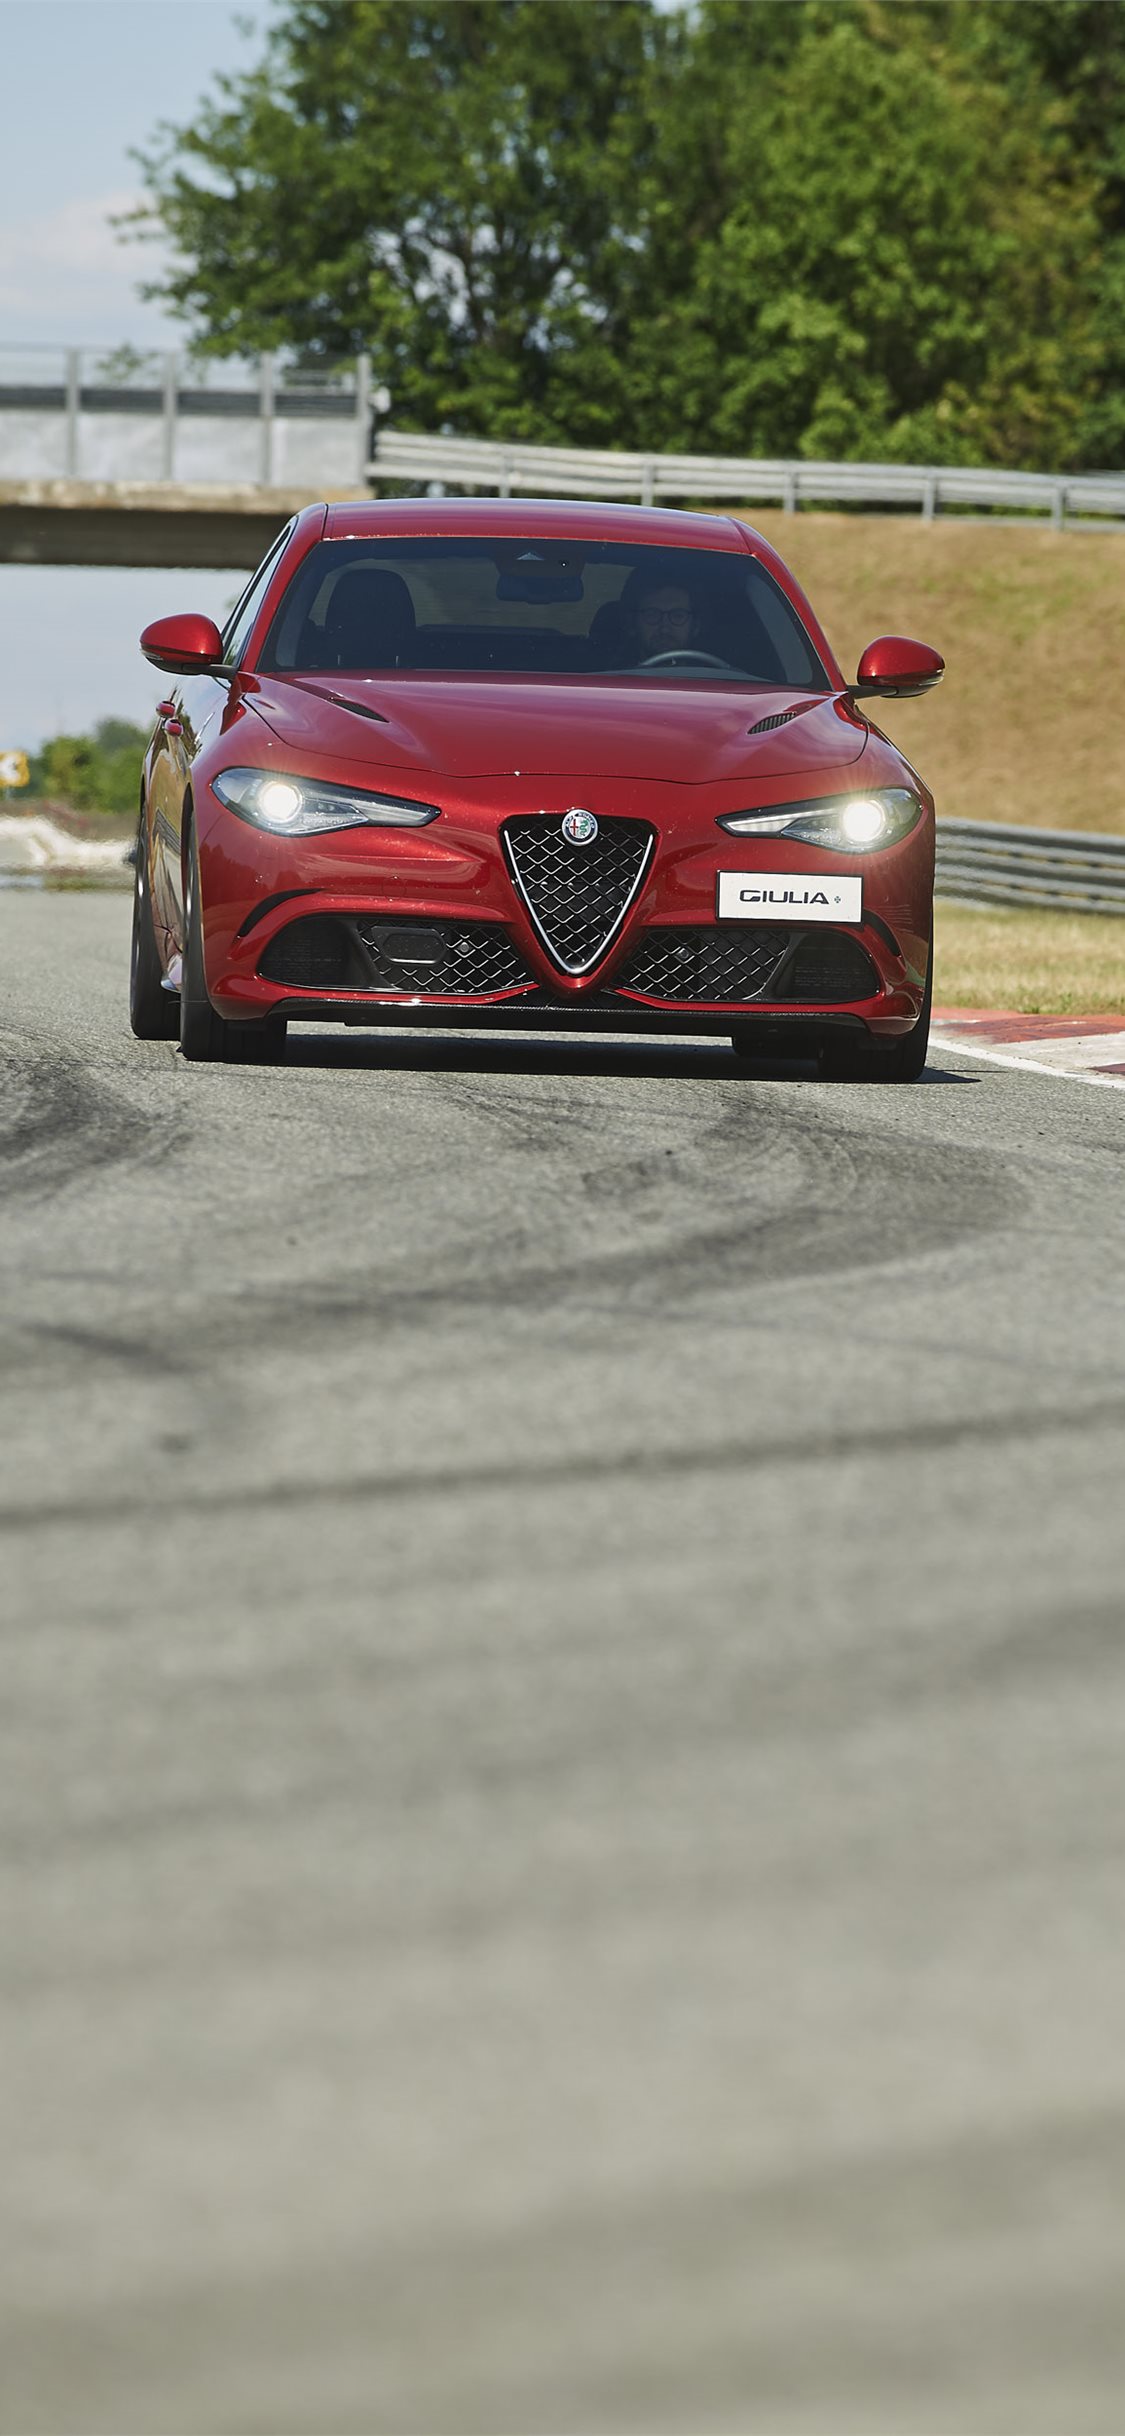 Alfa Romeo 5 Series Rival Iphone Wallpapers Free Download